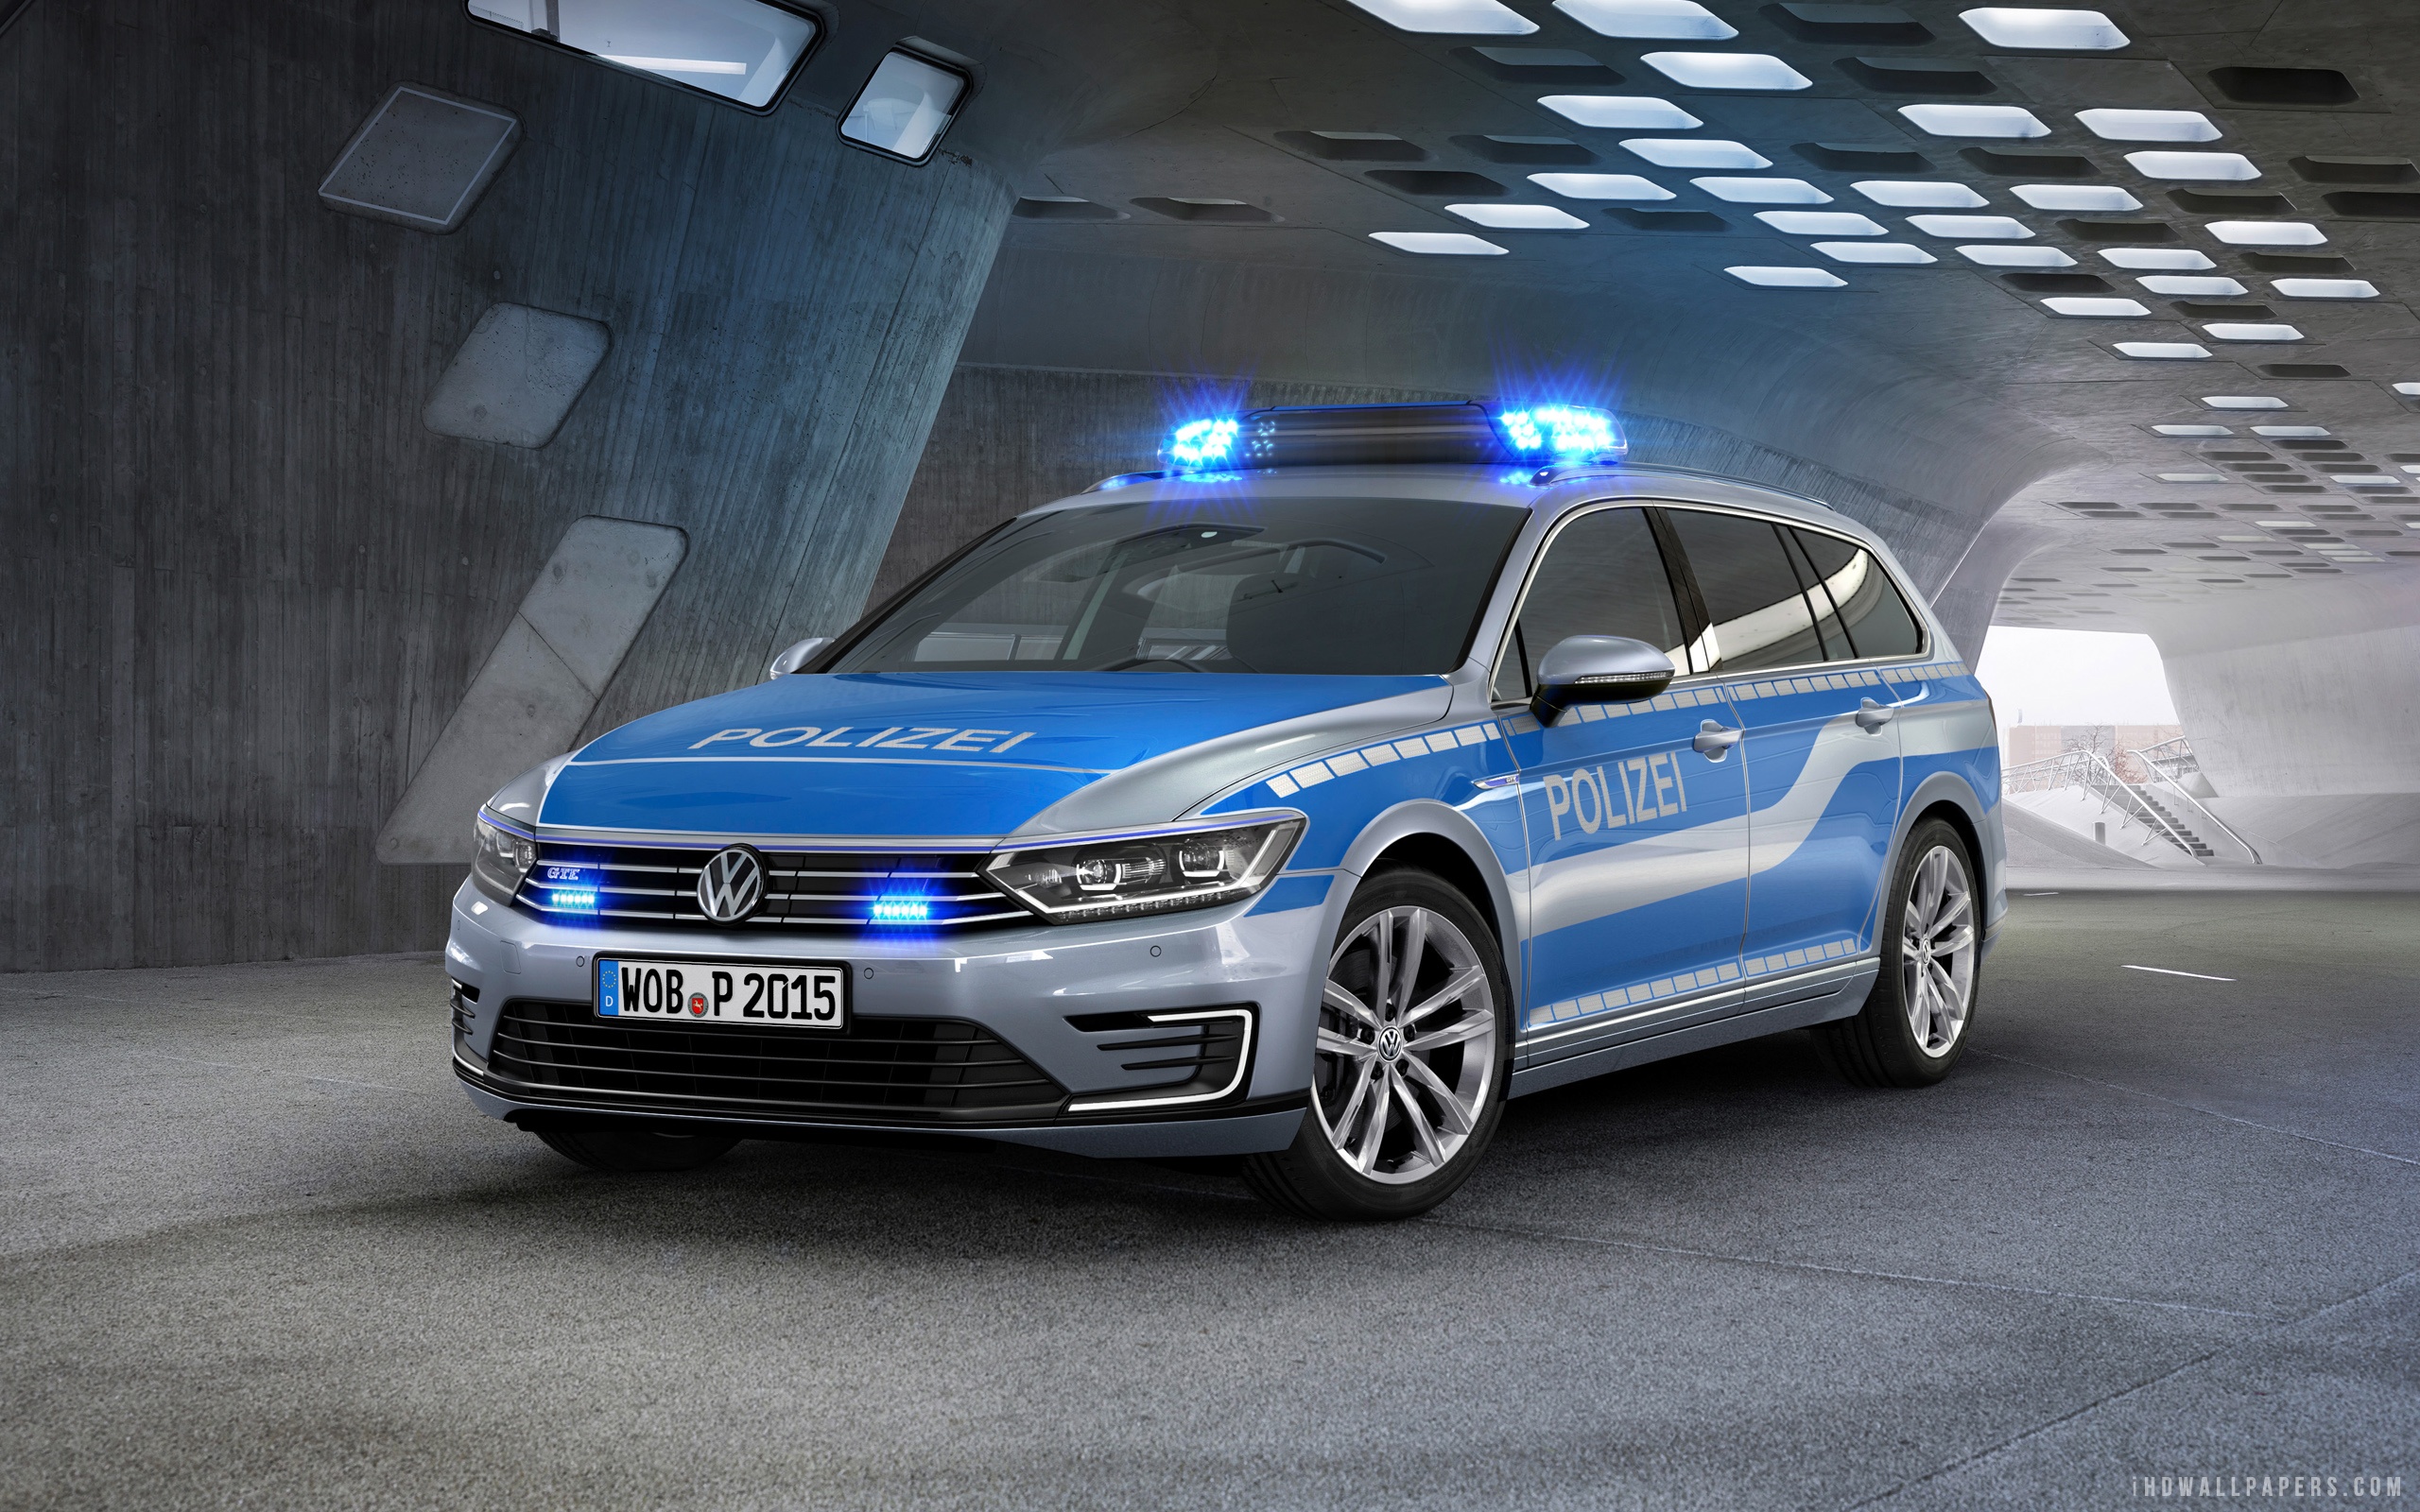 2015 Volkswagen Passat GTE German Police Car Wallpaper